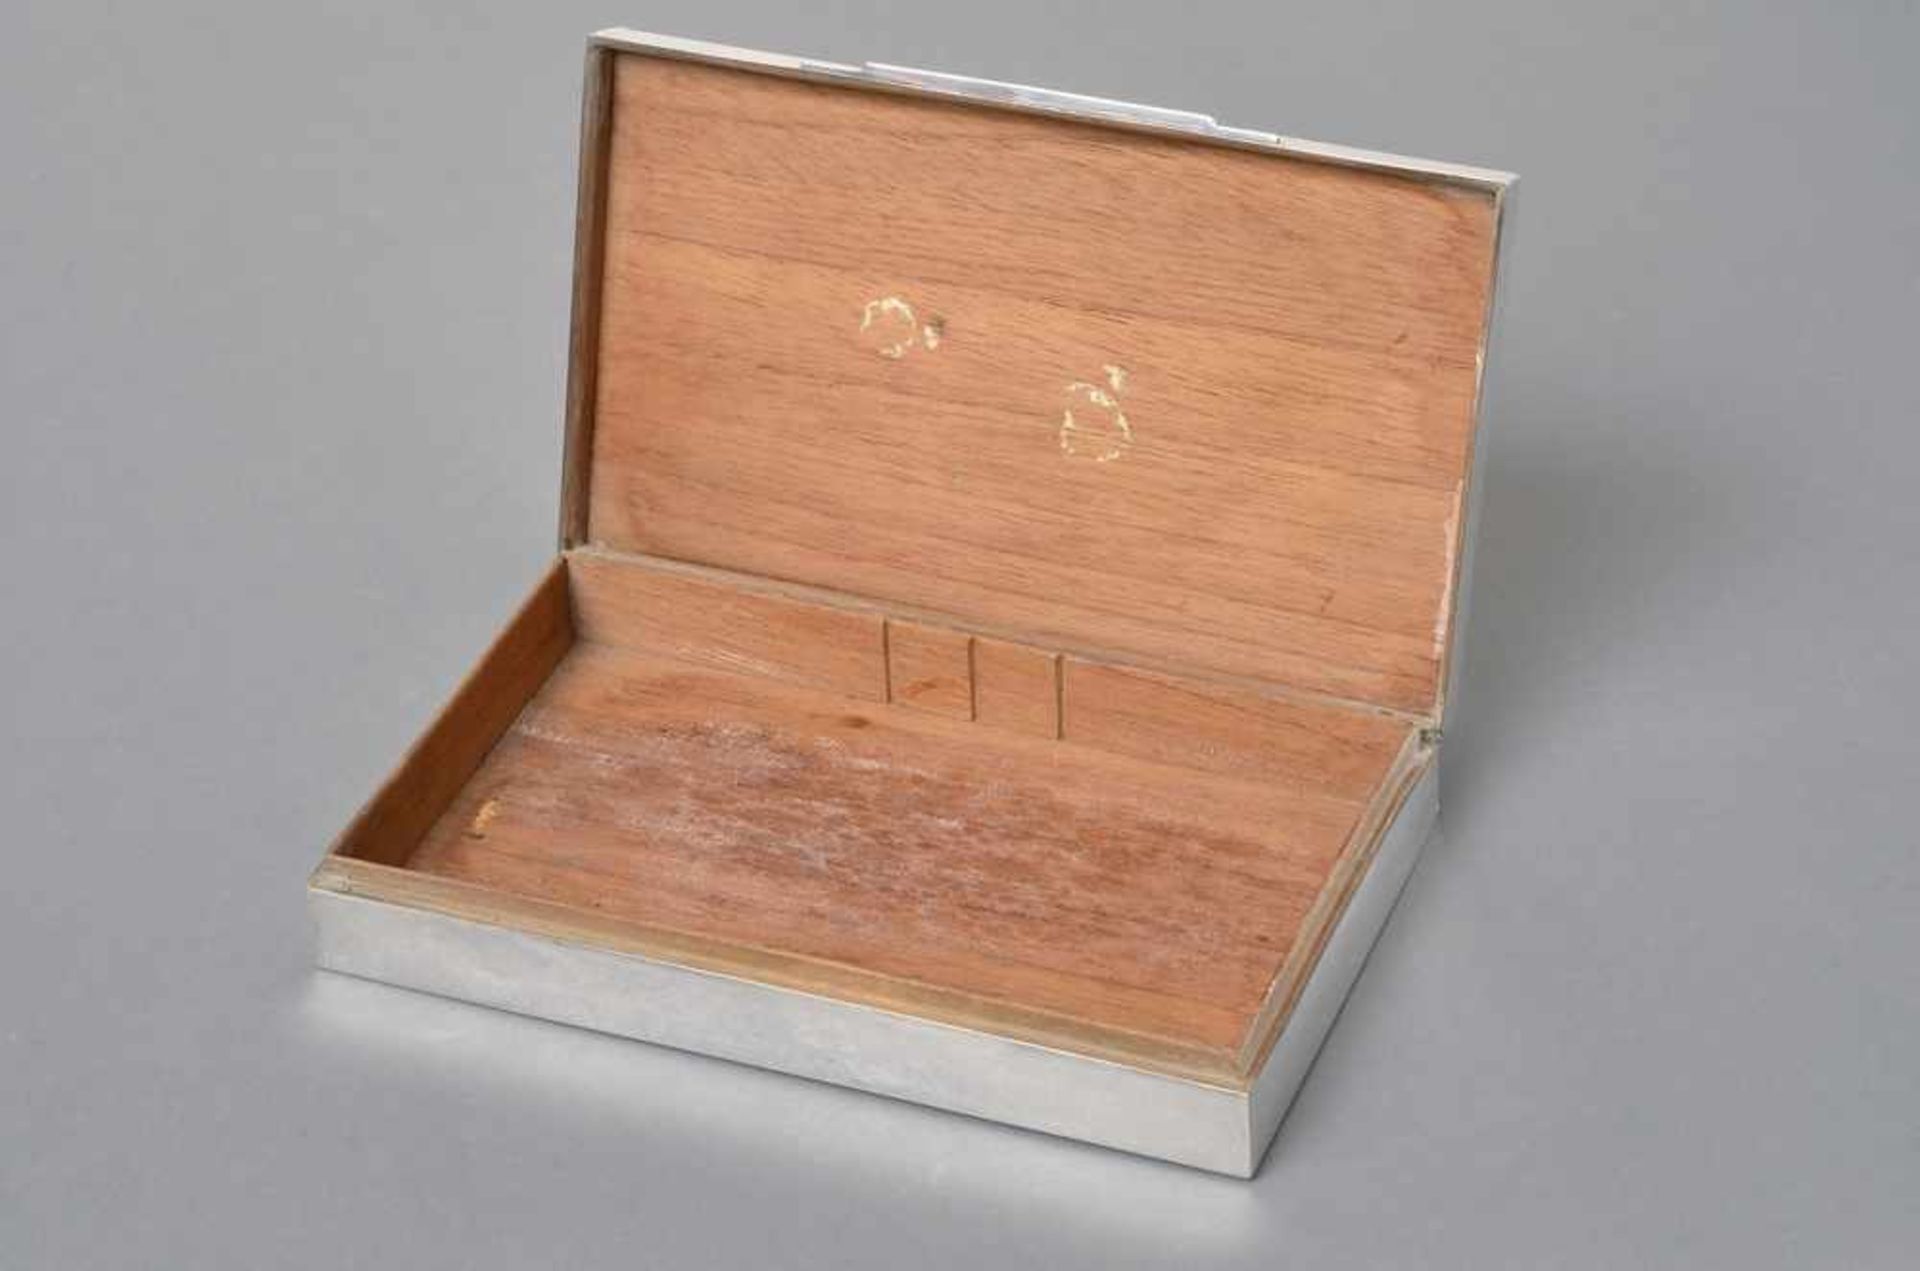 Schlichter Kasten mit Holz Interieur, Schweden, Silber 835, 3,5x19,5x11,2cm, Druckstellen - Bild 2 aus 2